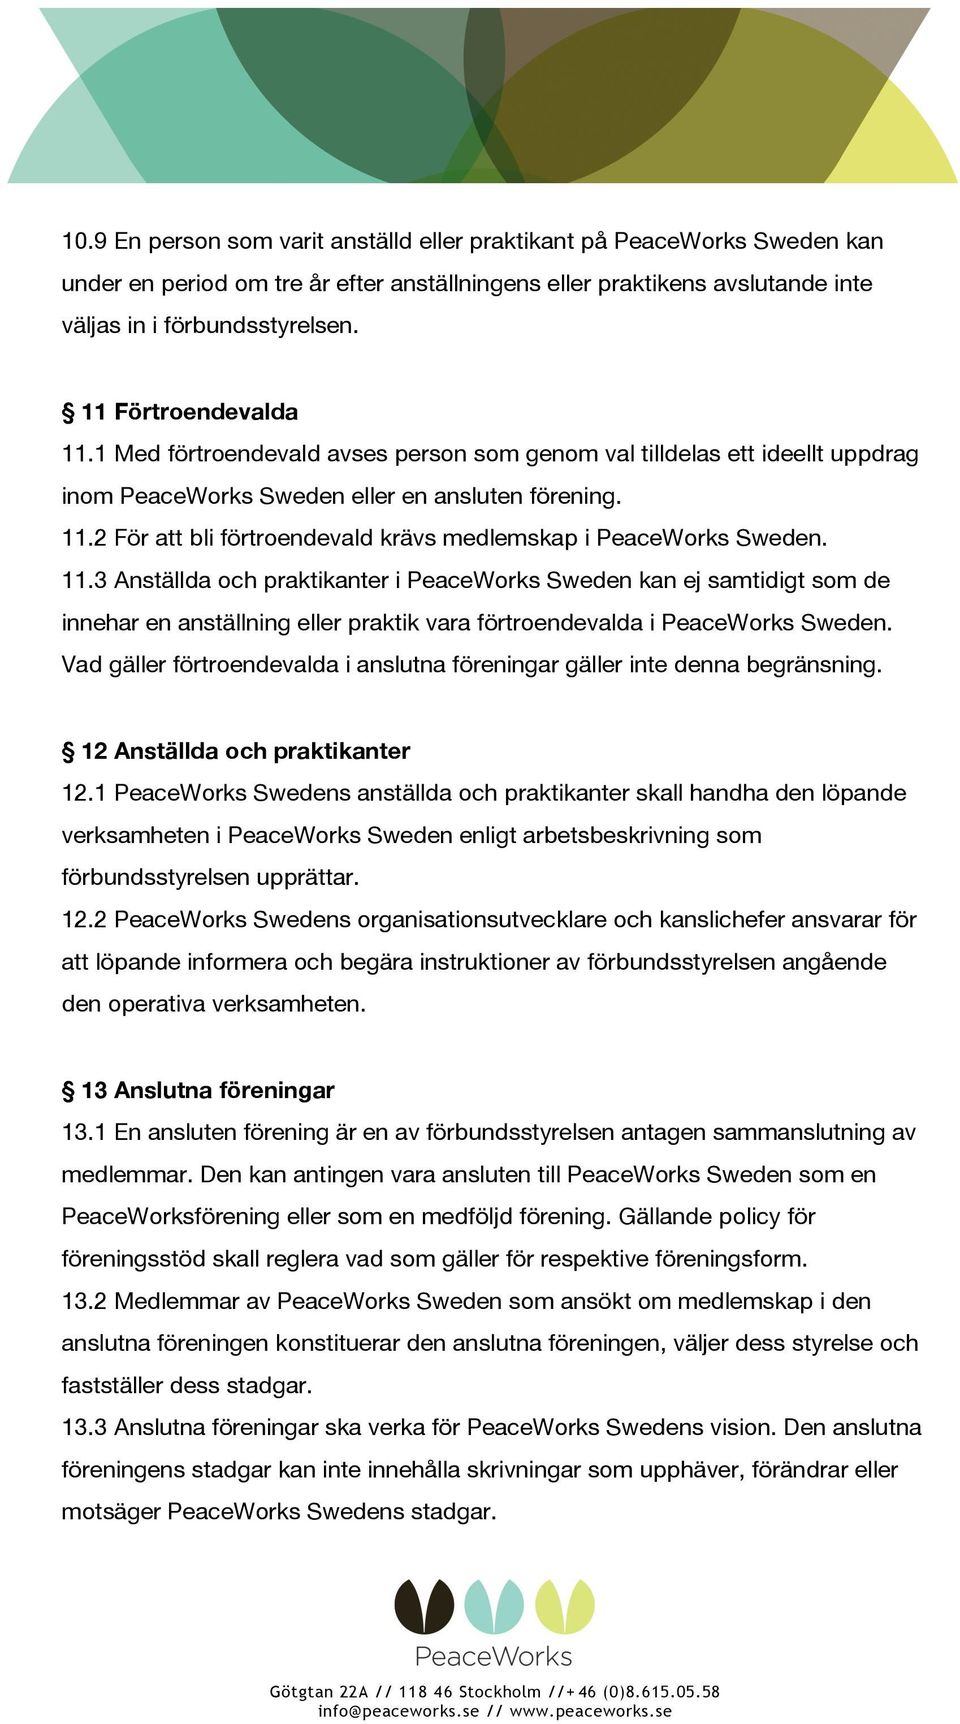 11.3 Anställda och praktikanter i PeaceWorks Sweden kan ej samtidigt som de innehar en anställning eller praktik vara förtroendevalda i PeaceWorks Sweden.